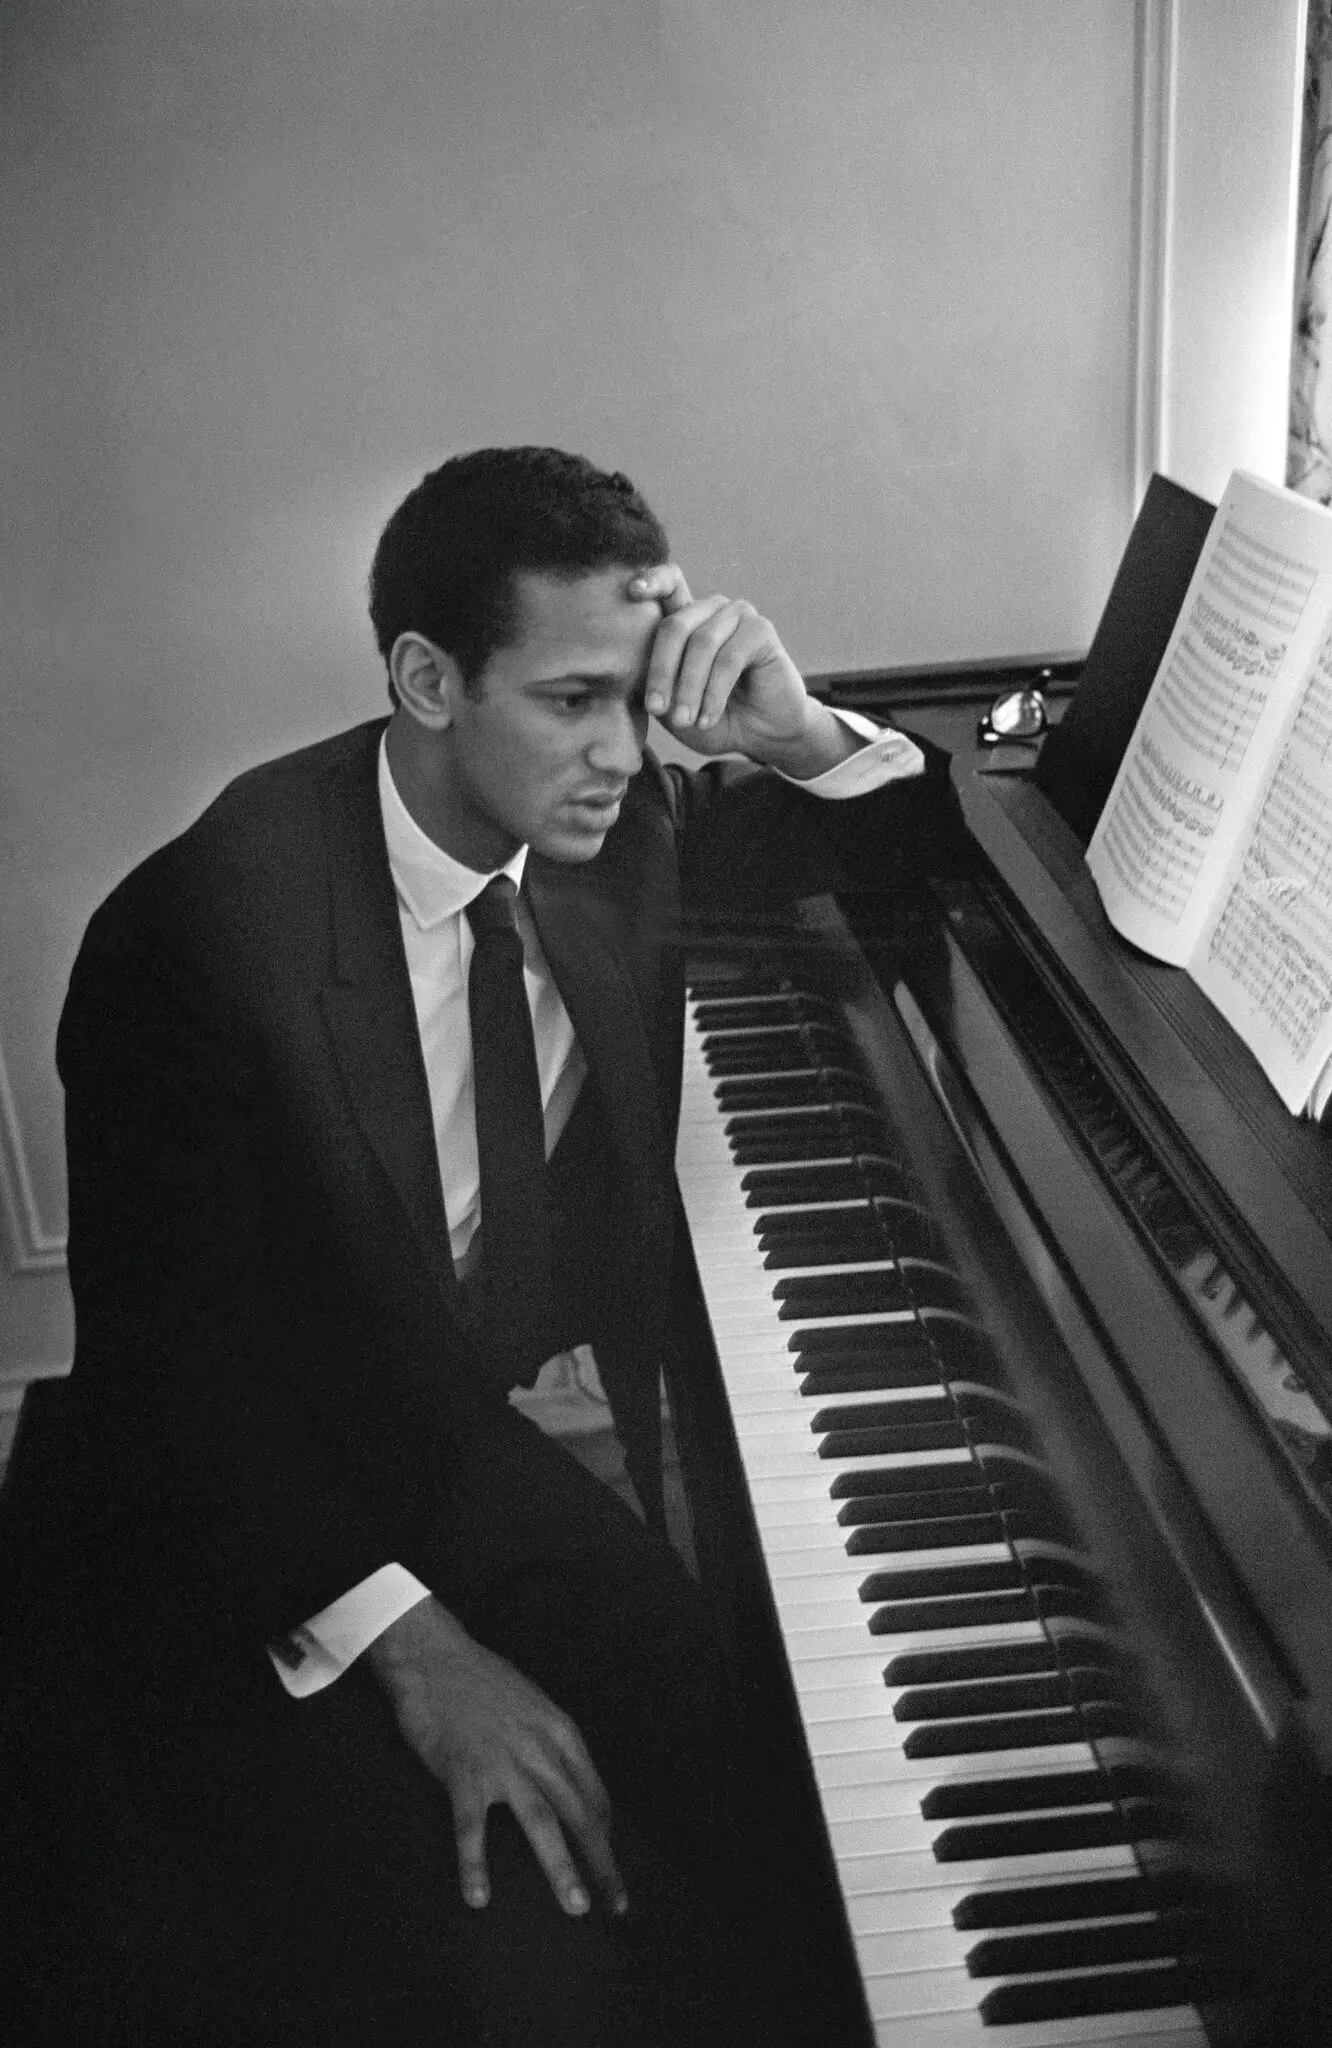 O pianista André Watts em sua casa em Manhattan em 1968. “Há algo de belo em ter um público inteiro pendurado em uma única nota”, disse ele certa vez. (Crédito da fotografia: Cortesia © Copyright Neal Boenzi/The New York Times/ REPRODUÇÃO/ DIREITOS RESERVADOS)